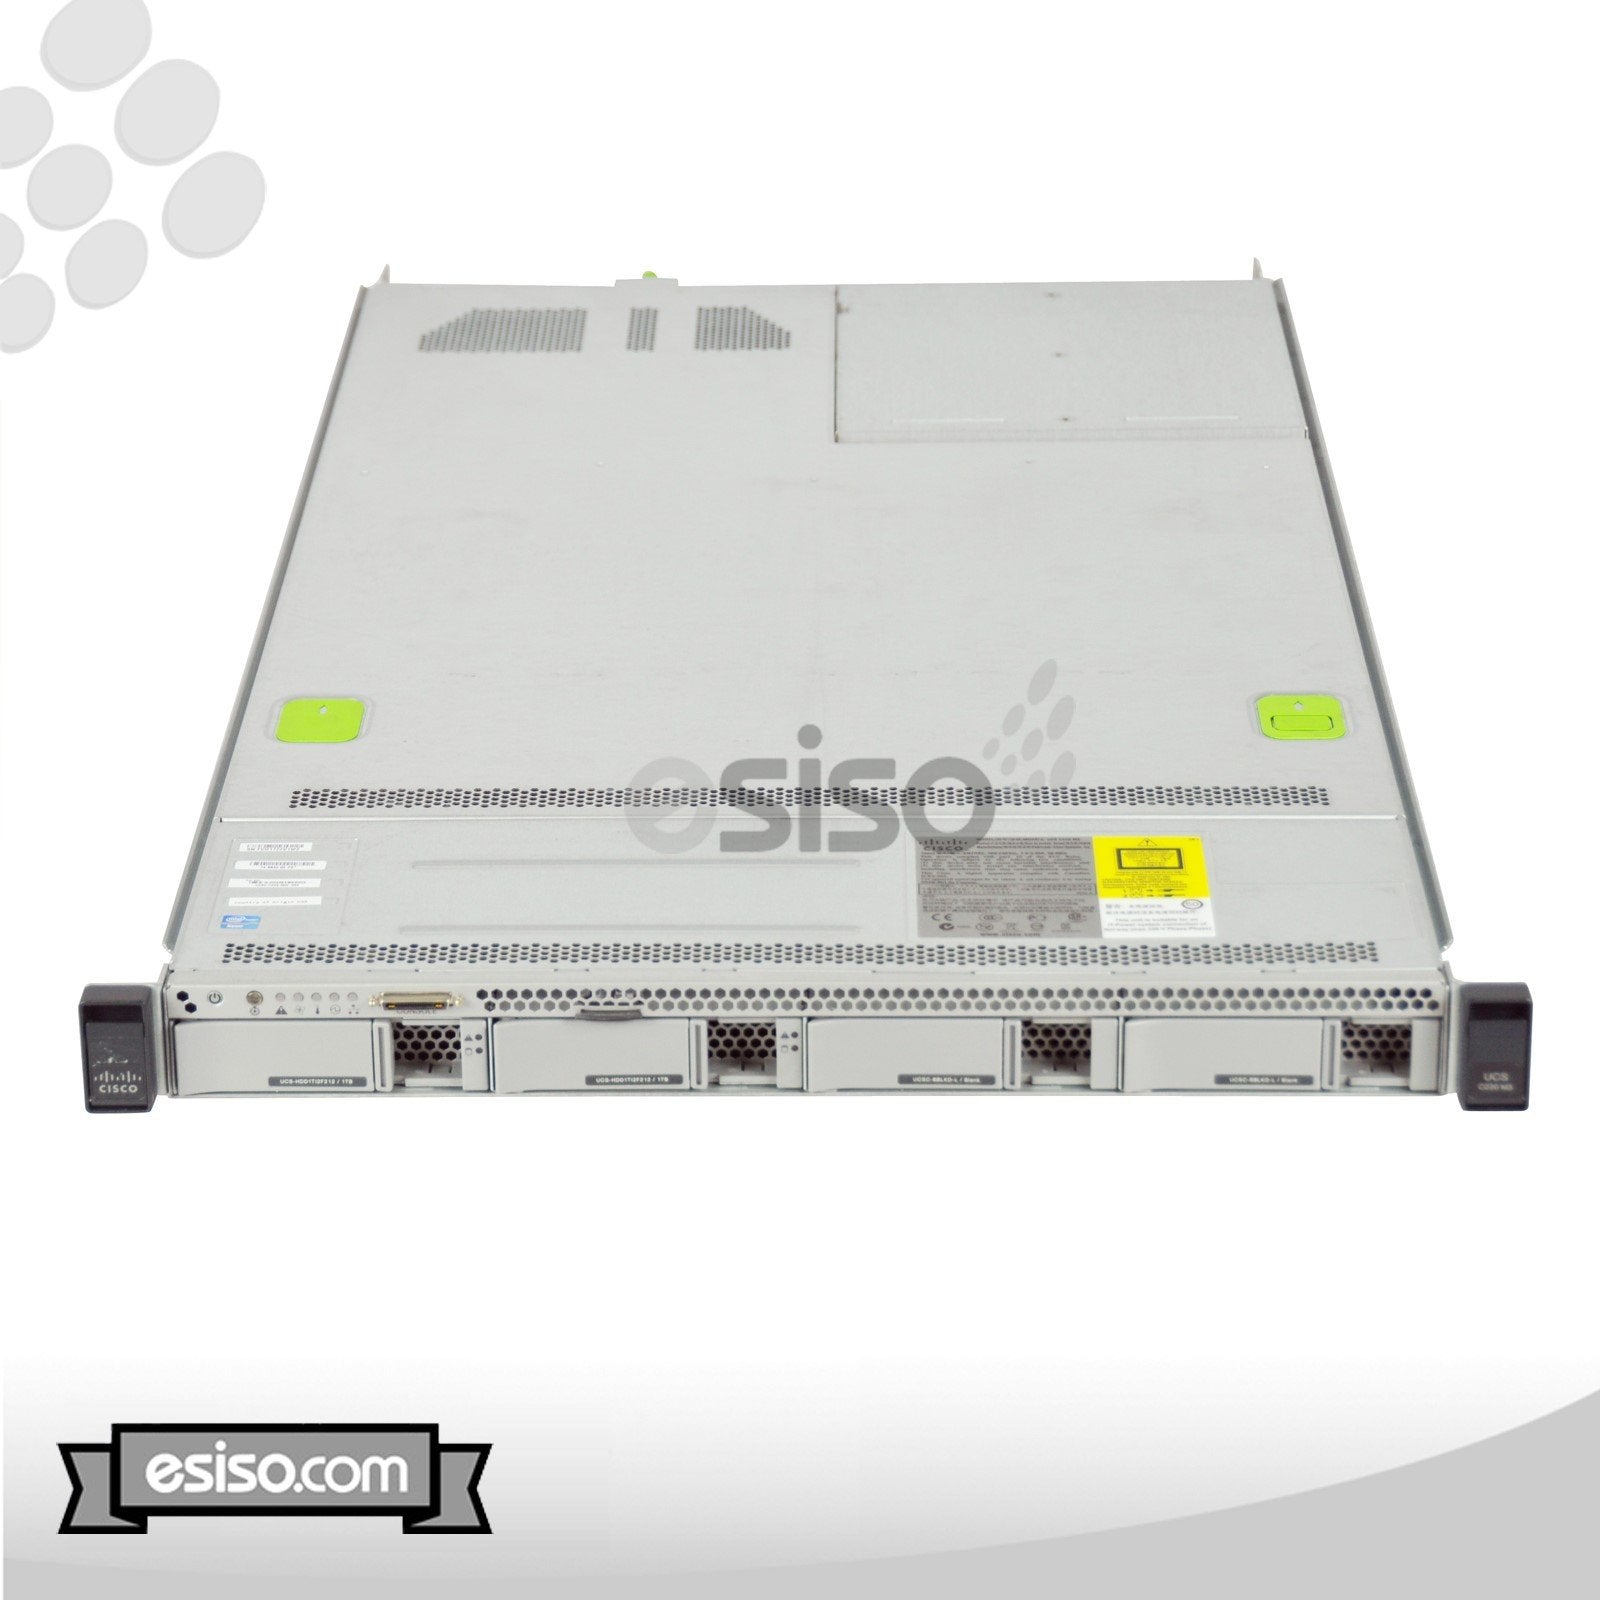 CISCO UCS C220 M3 LFF SERVER 2x 8 CORE E5-2689 2.6GHz 128GB RAM 2x 300GB SATA